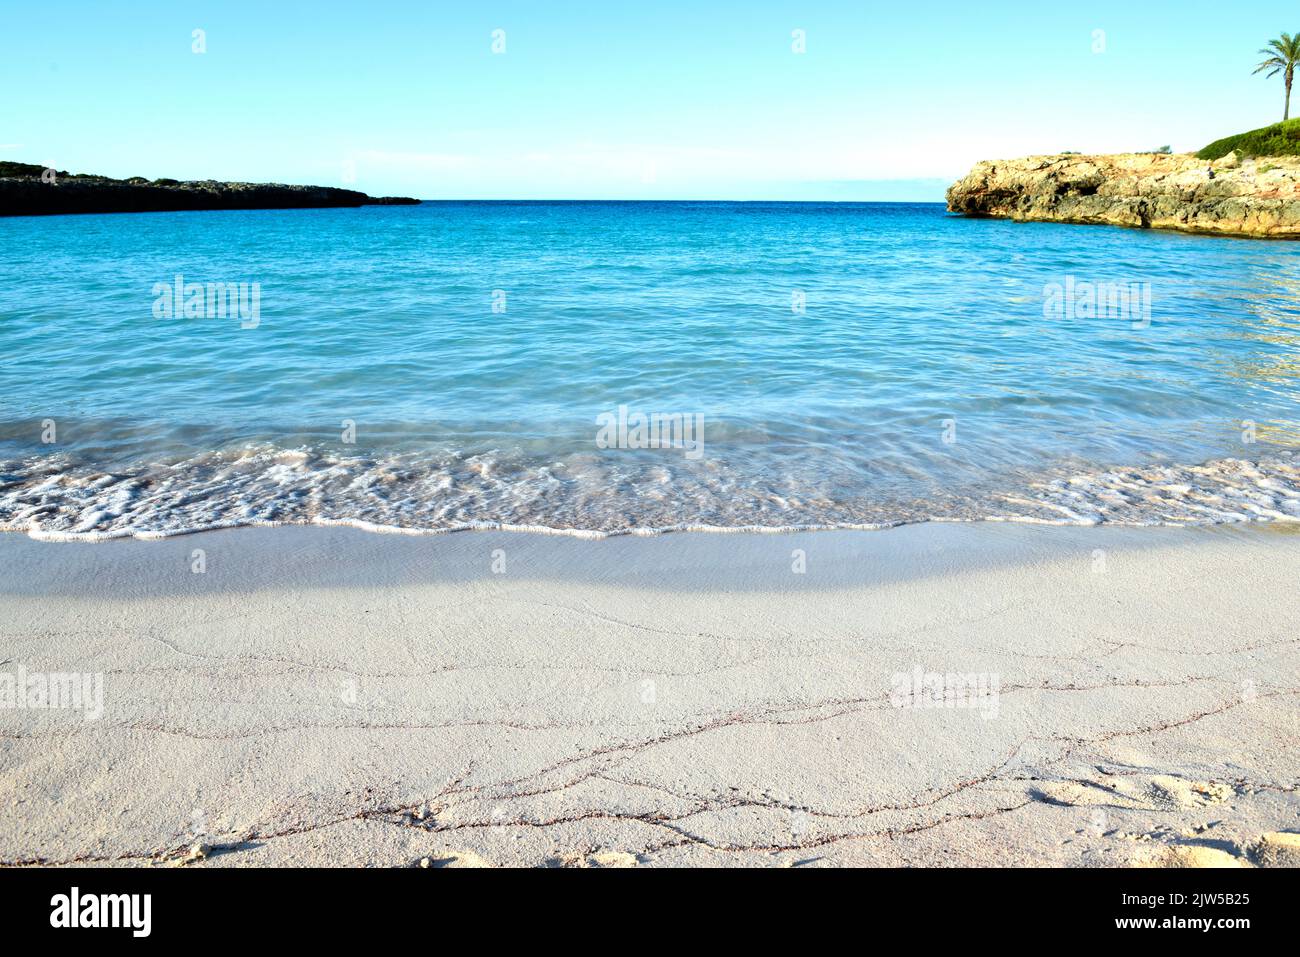 Hermosa playa vacía con arena blanca y agua azul clara del océano en la orilla Foto de stock